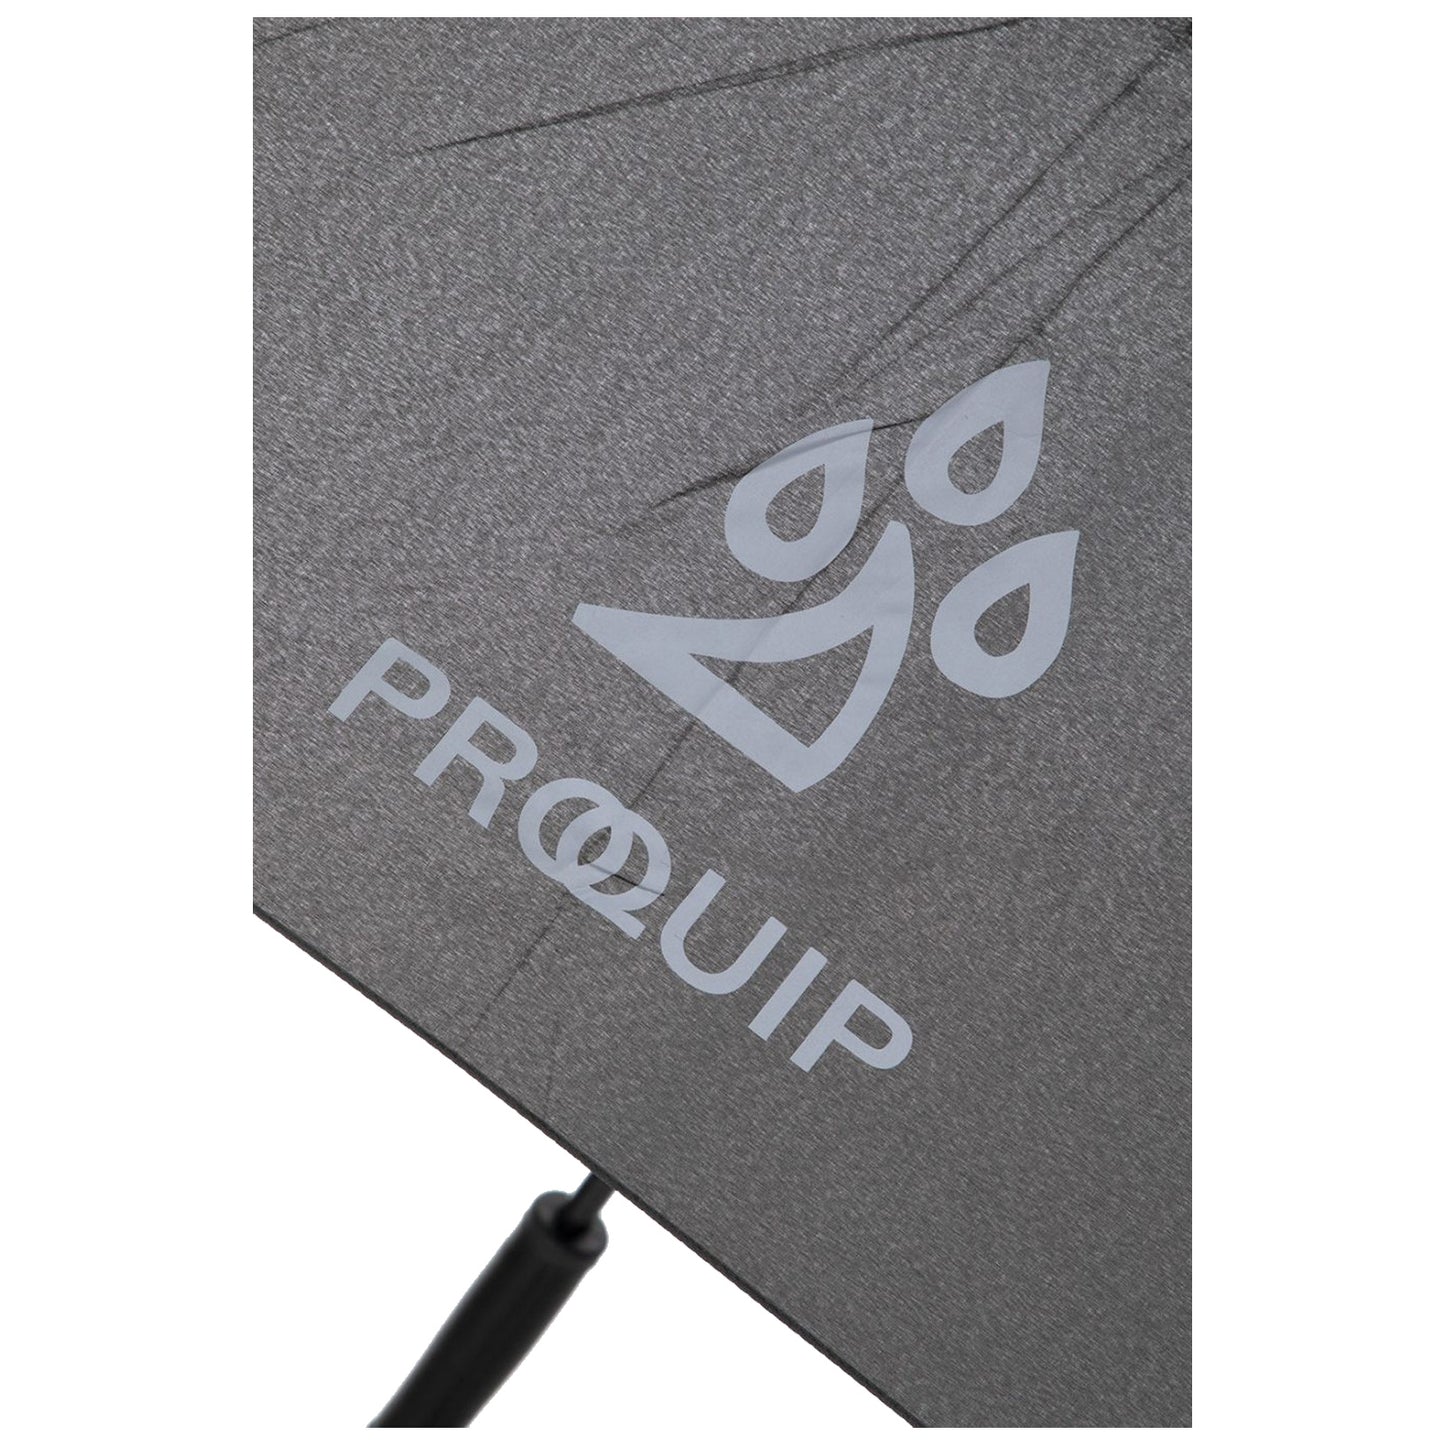 ProQuip Premium 62" Double Canopy Umbrella